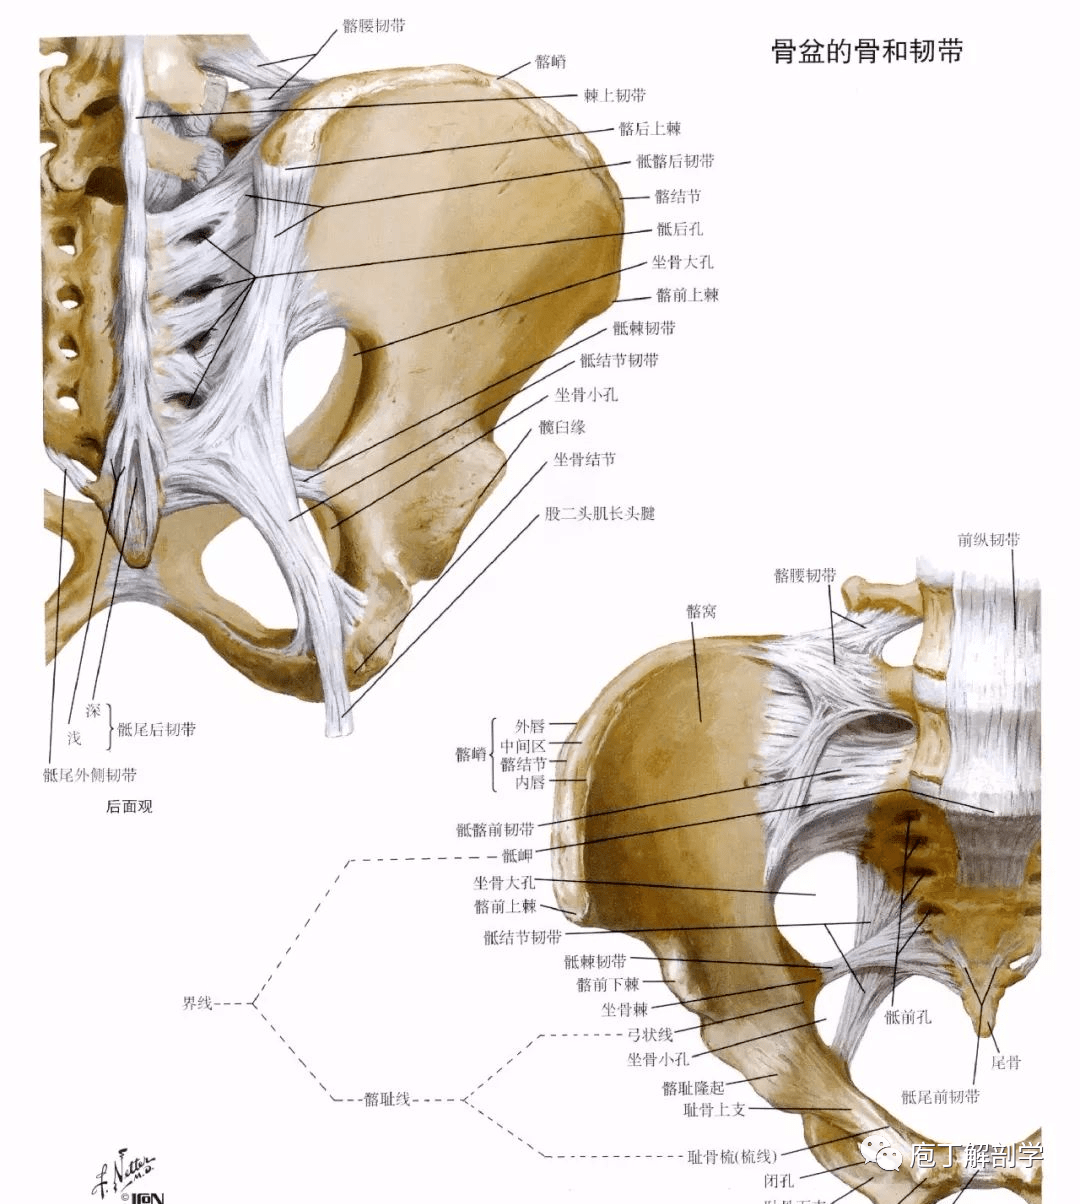 弓状线,耻骨梳,耻骨结节,耻骨联合上缘下口:尾骨尖,骶结节韧带,坐骨支